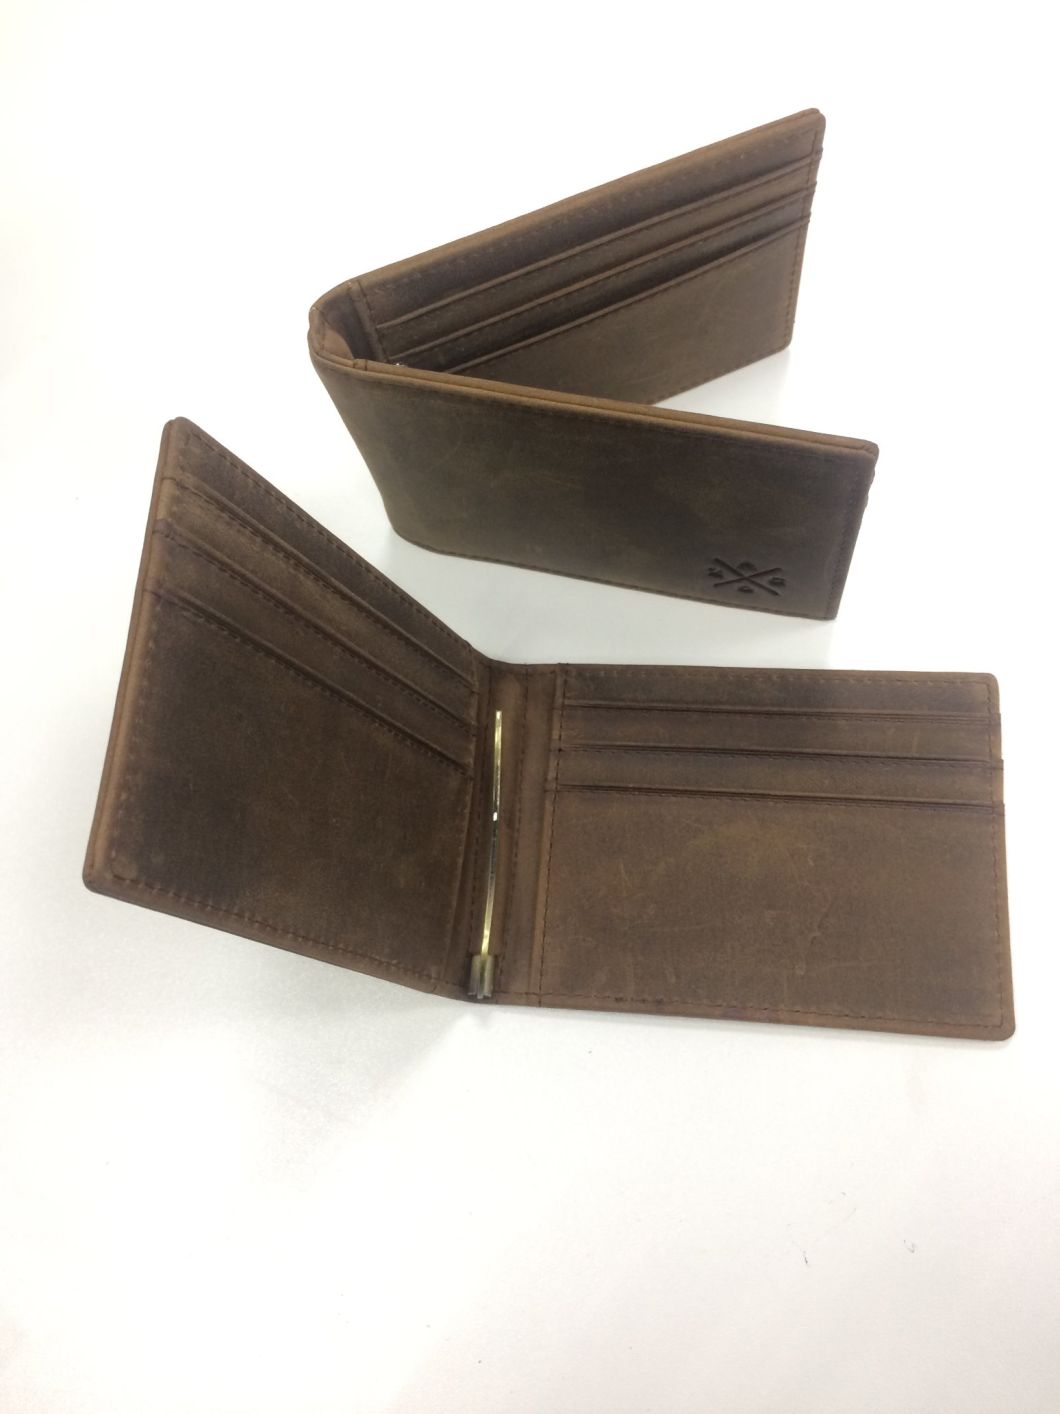 100% Copper Money Clip Card Holder Wallet Vintage Crazy Horse Leather Wallet